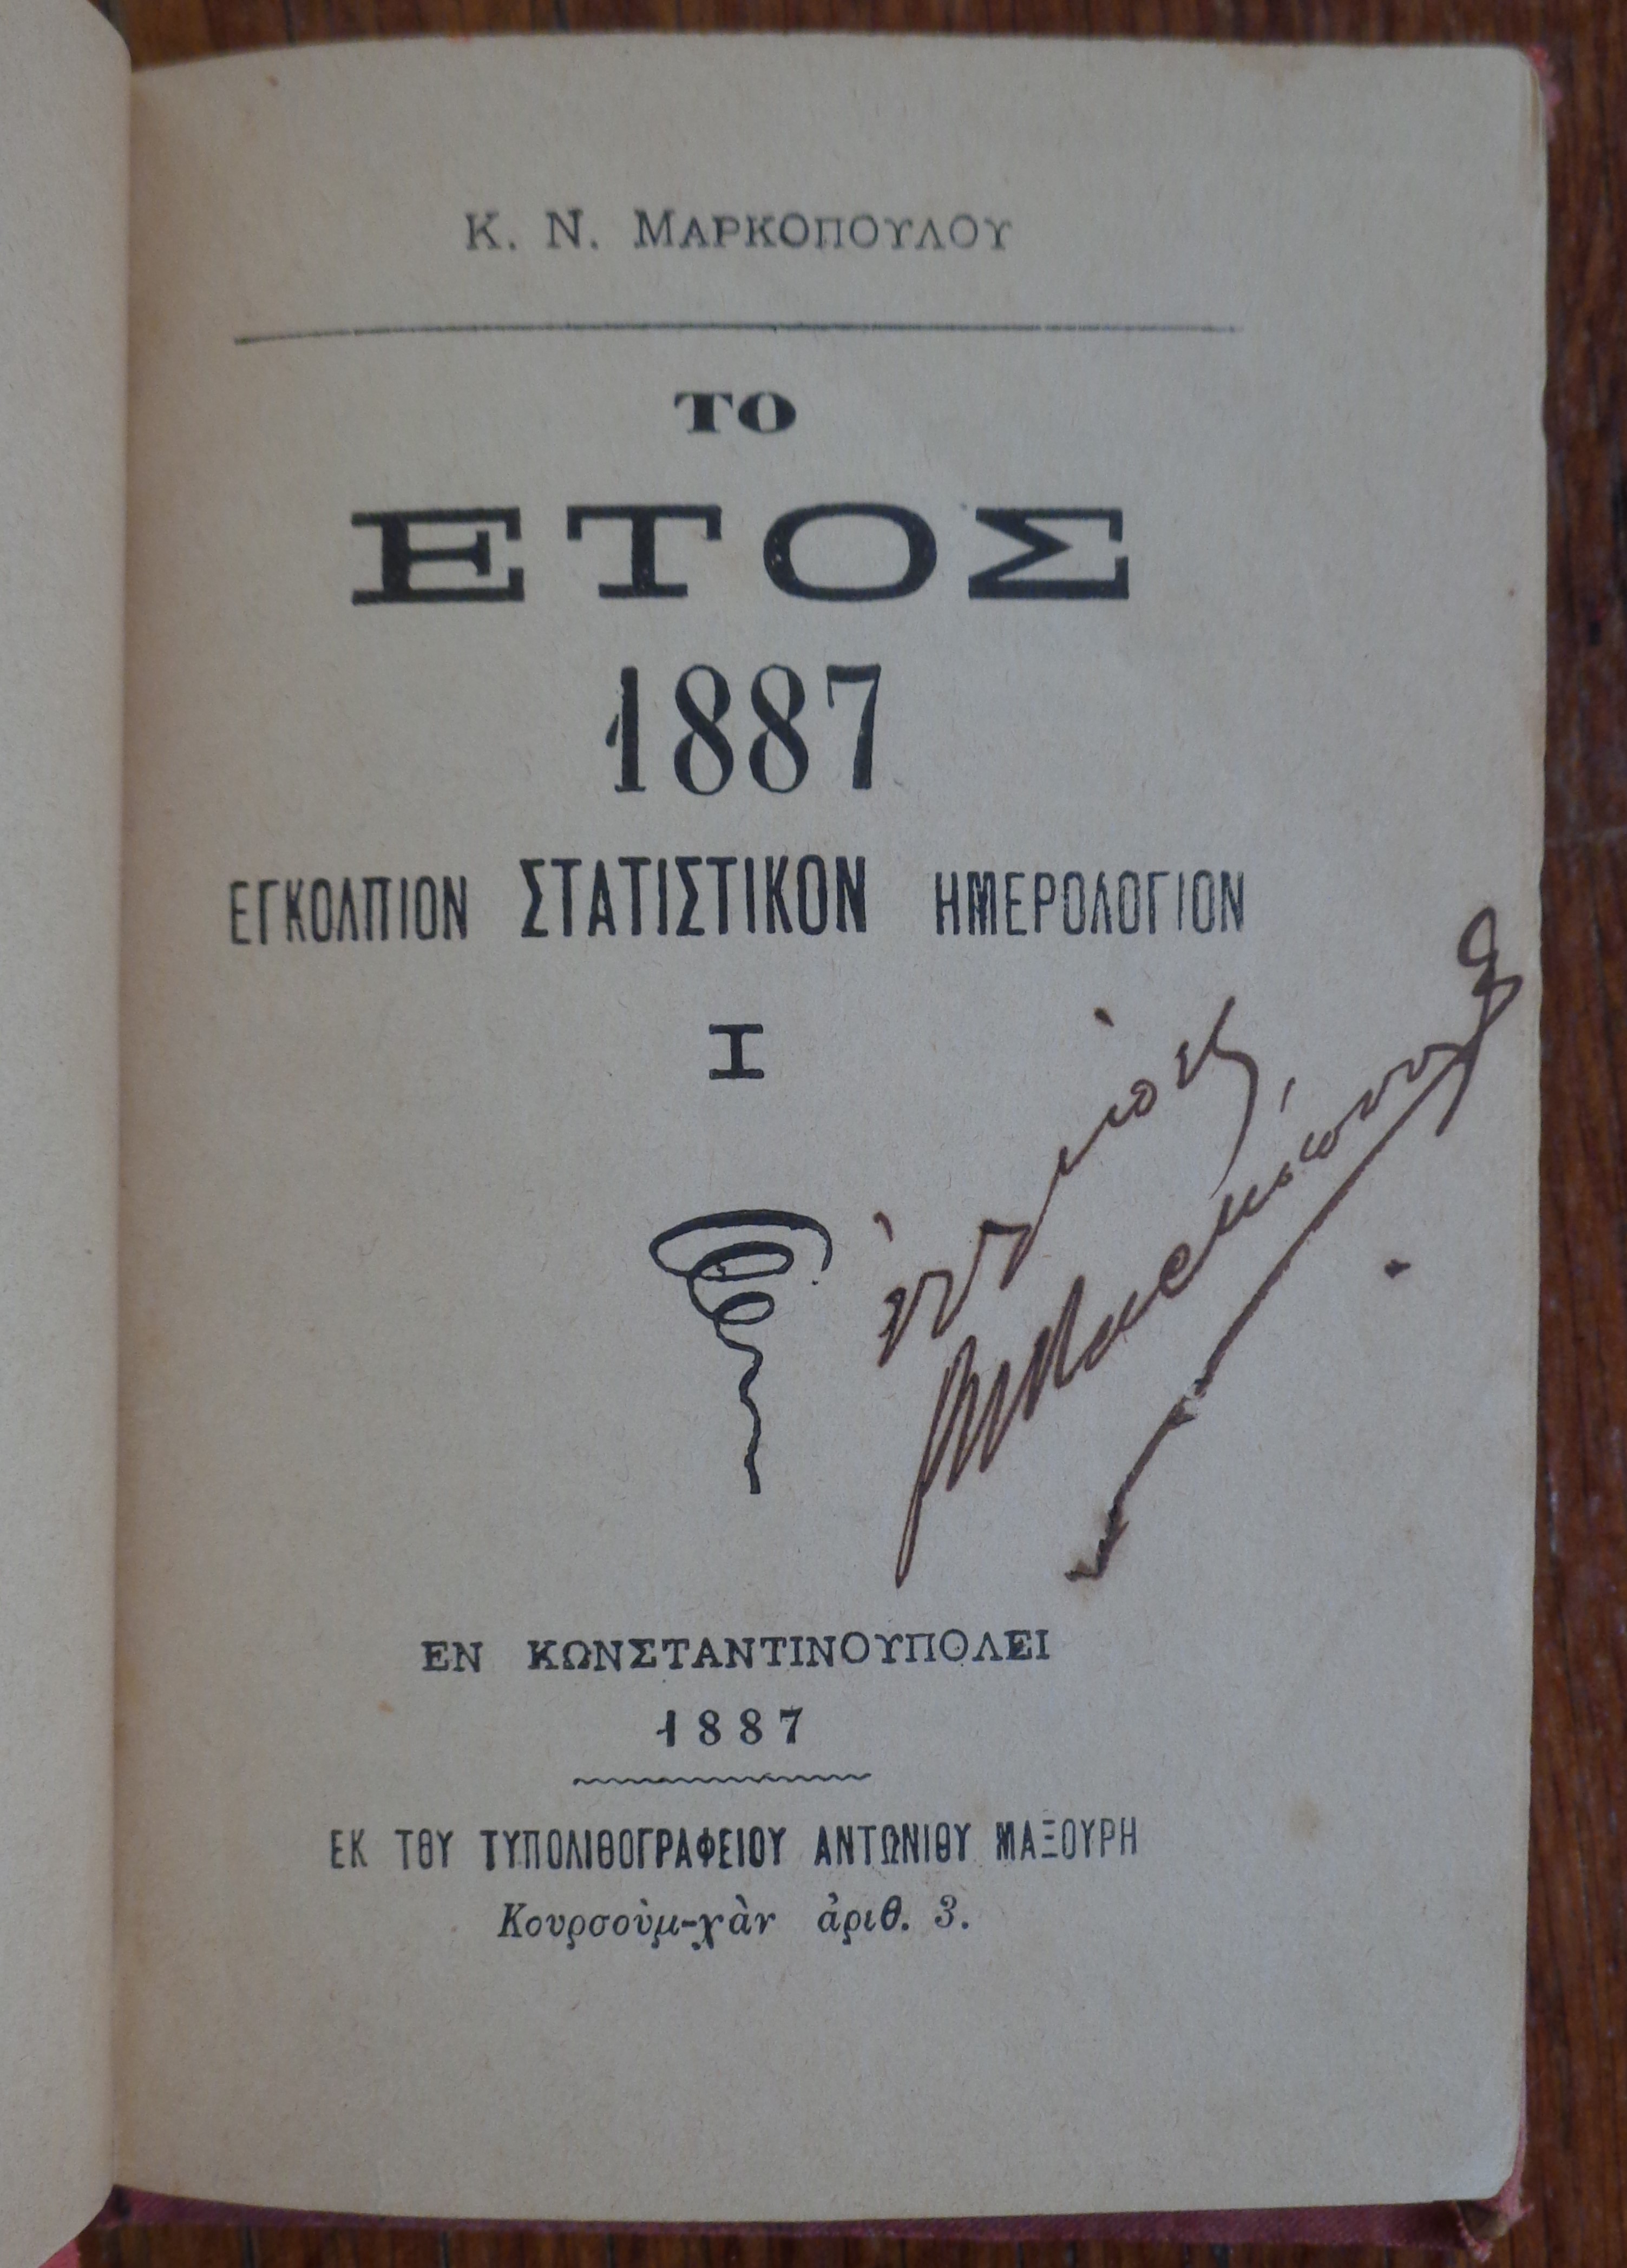 Κ.Ν. ΜΑΡΚΟΠΟΥΛΟΣ Το έτος 1887. Εγκόλπιον στατιστικόν Ημερολόγιον. Εν Κωνσταντινουπόλει, 1887 